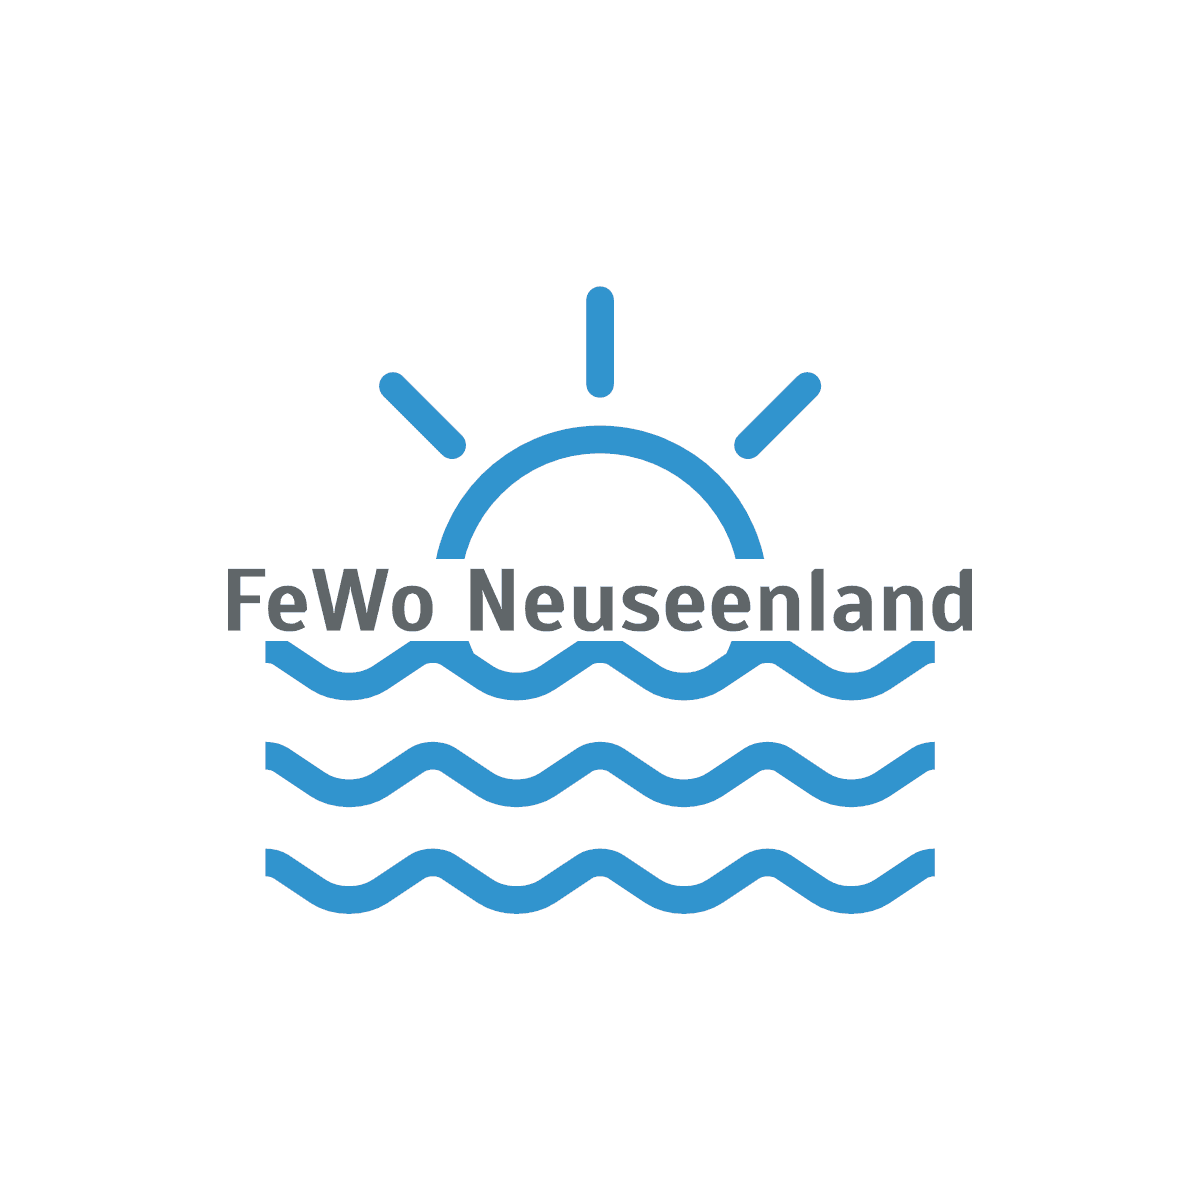 (c) Fewo-neuseenland.de